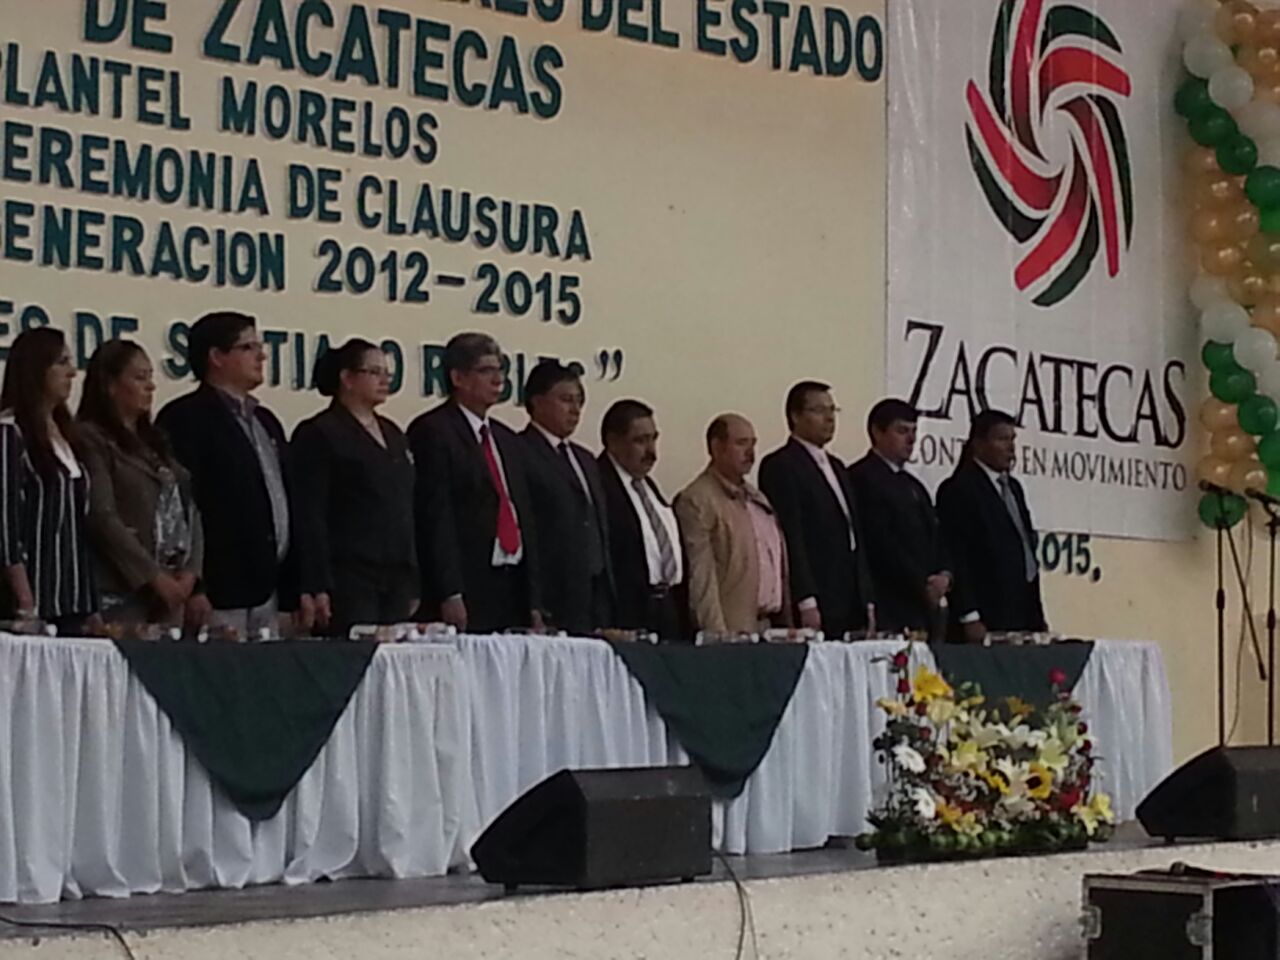 Nuestra Rectora  en Ceremonia de clausura del Colegio de Bachilleres Plantel Morelos